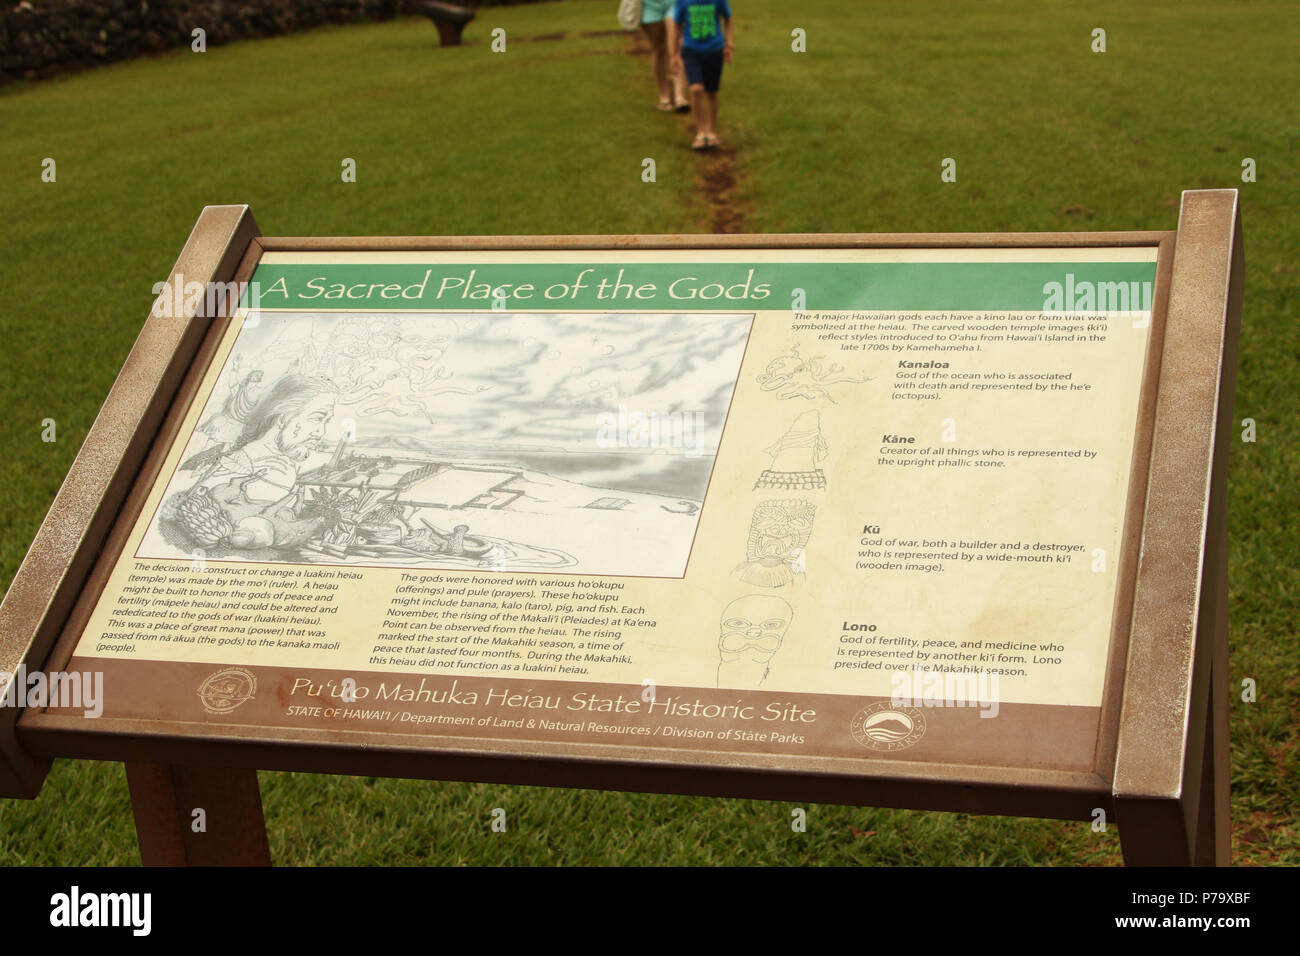 Unterschreiben Sie bei Puu O Mahuka Heiau State Historic Site. Ein heiliger Ort der Götter. Ein Bluff mit Blick auf Waimea Bay und Waimea Valley. Insel Oahu, Hawaii, USA Stockfoto